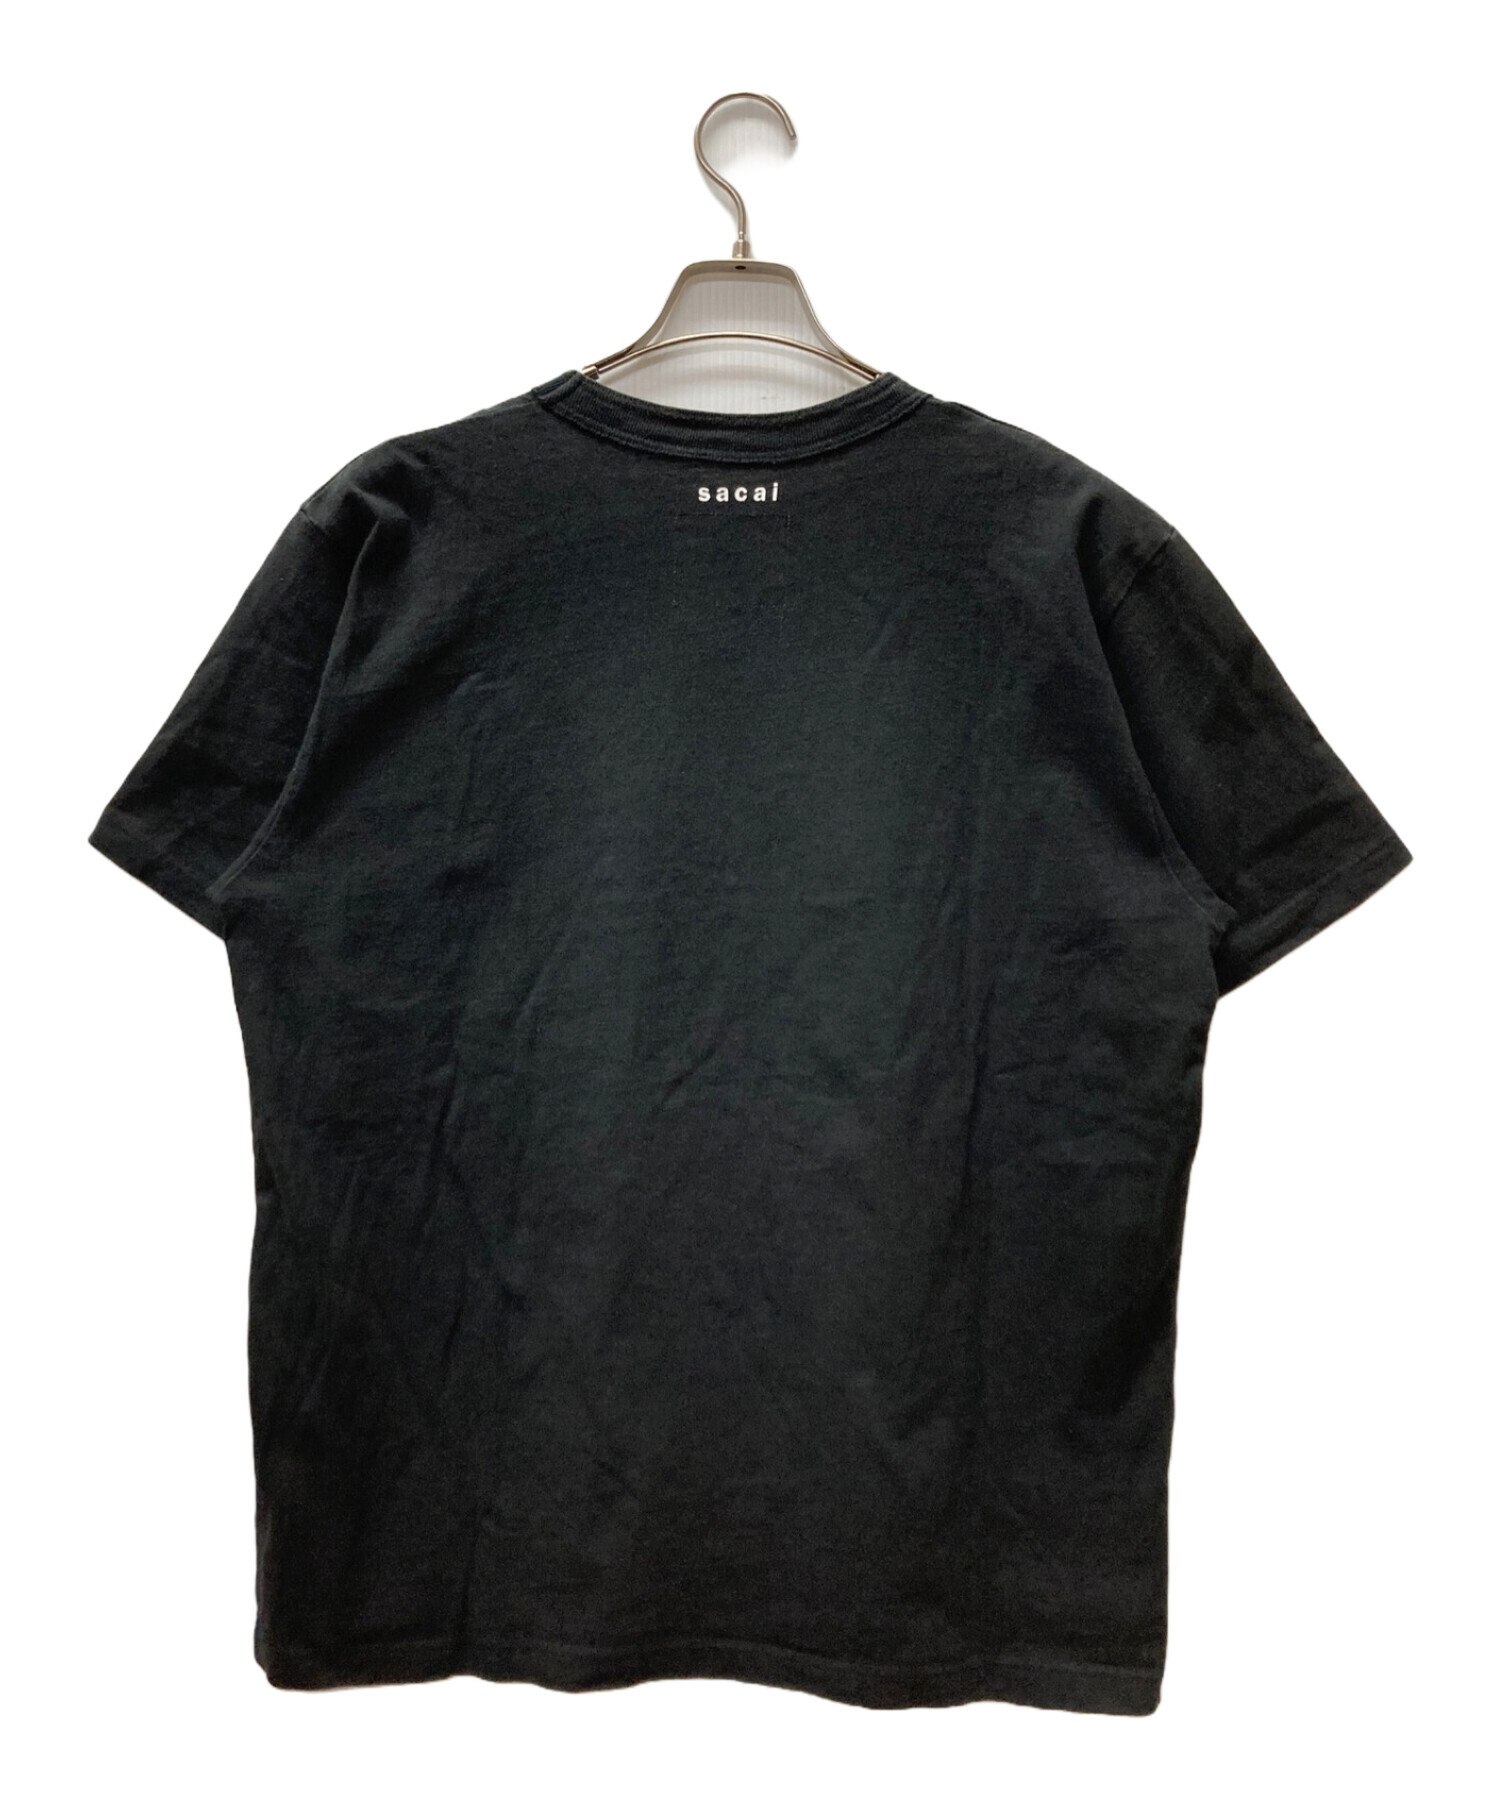 12,558円sacai KAWS Embroidery T-Shirt tシャツ サイズ 3